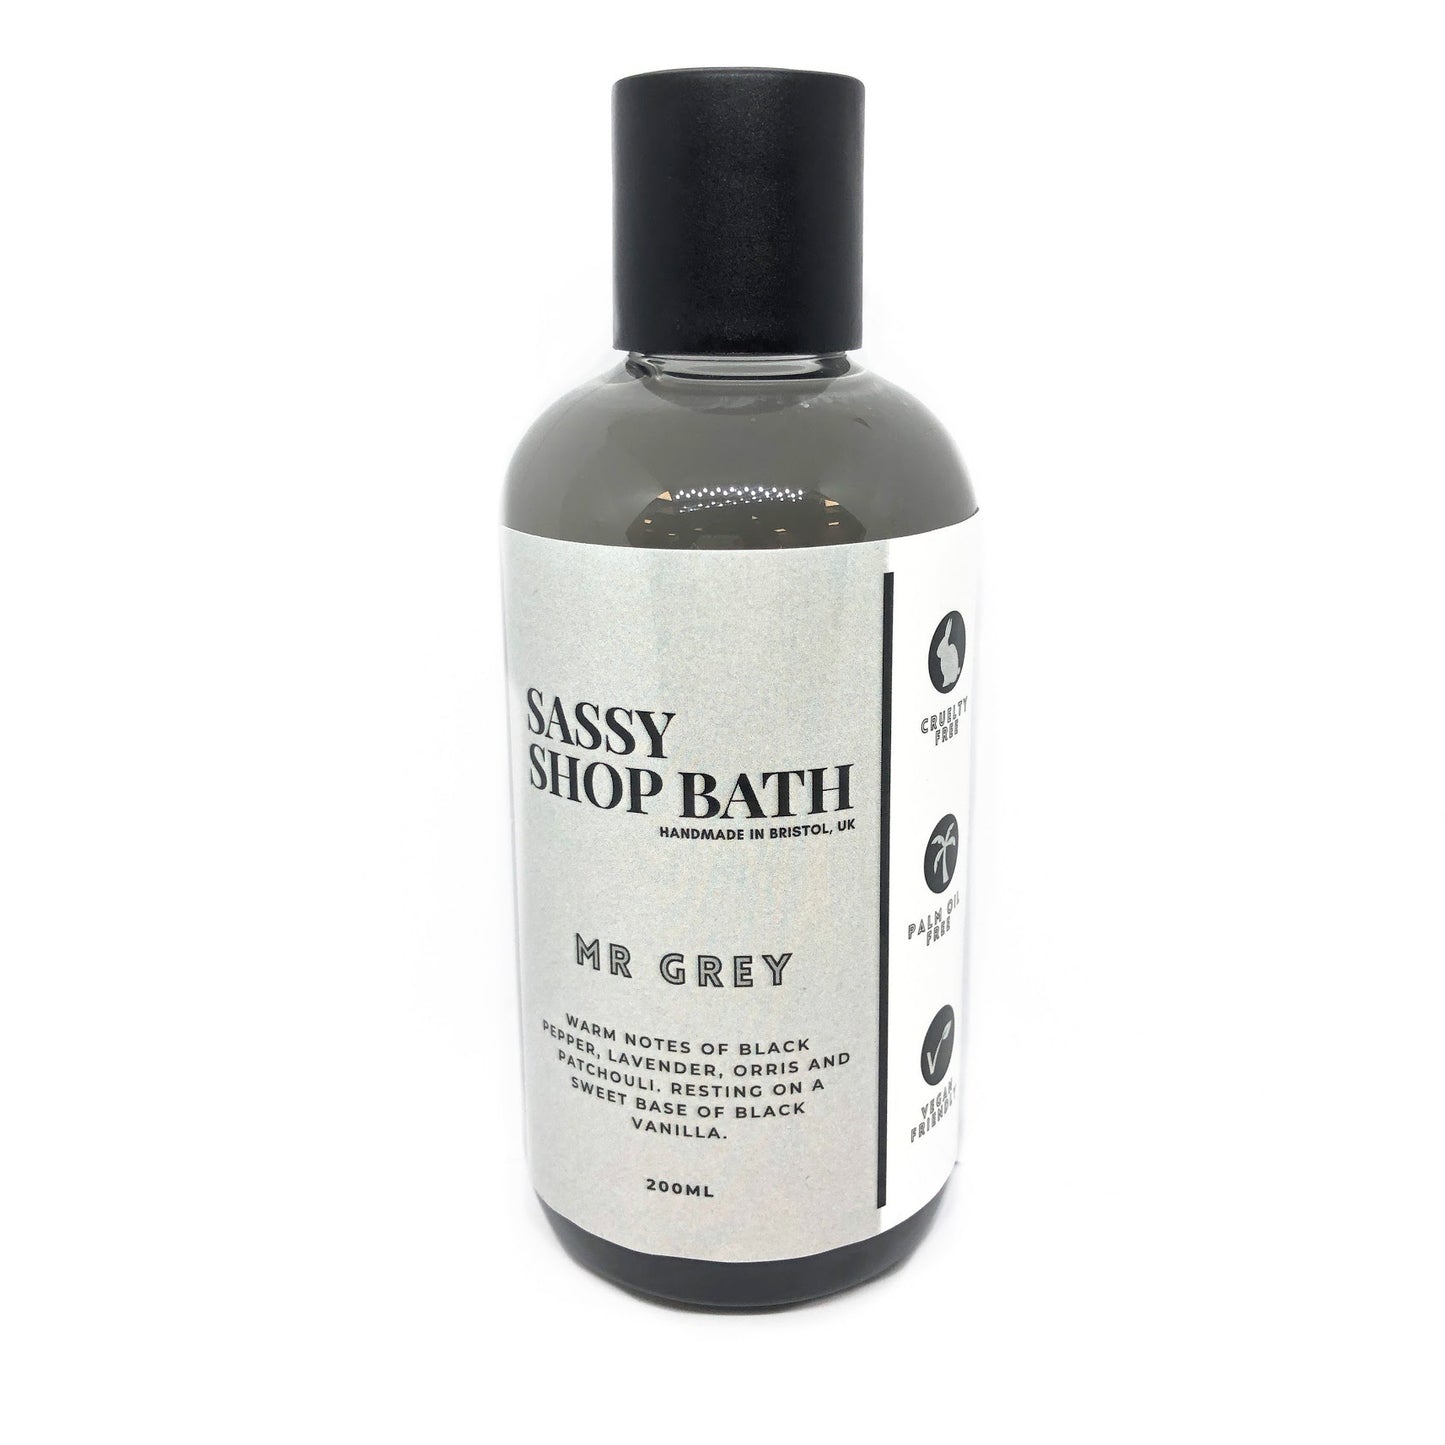 Sassy Shop Bath 3 in 1 Wash - Mr Grey 200ml